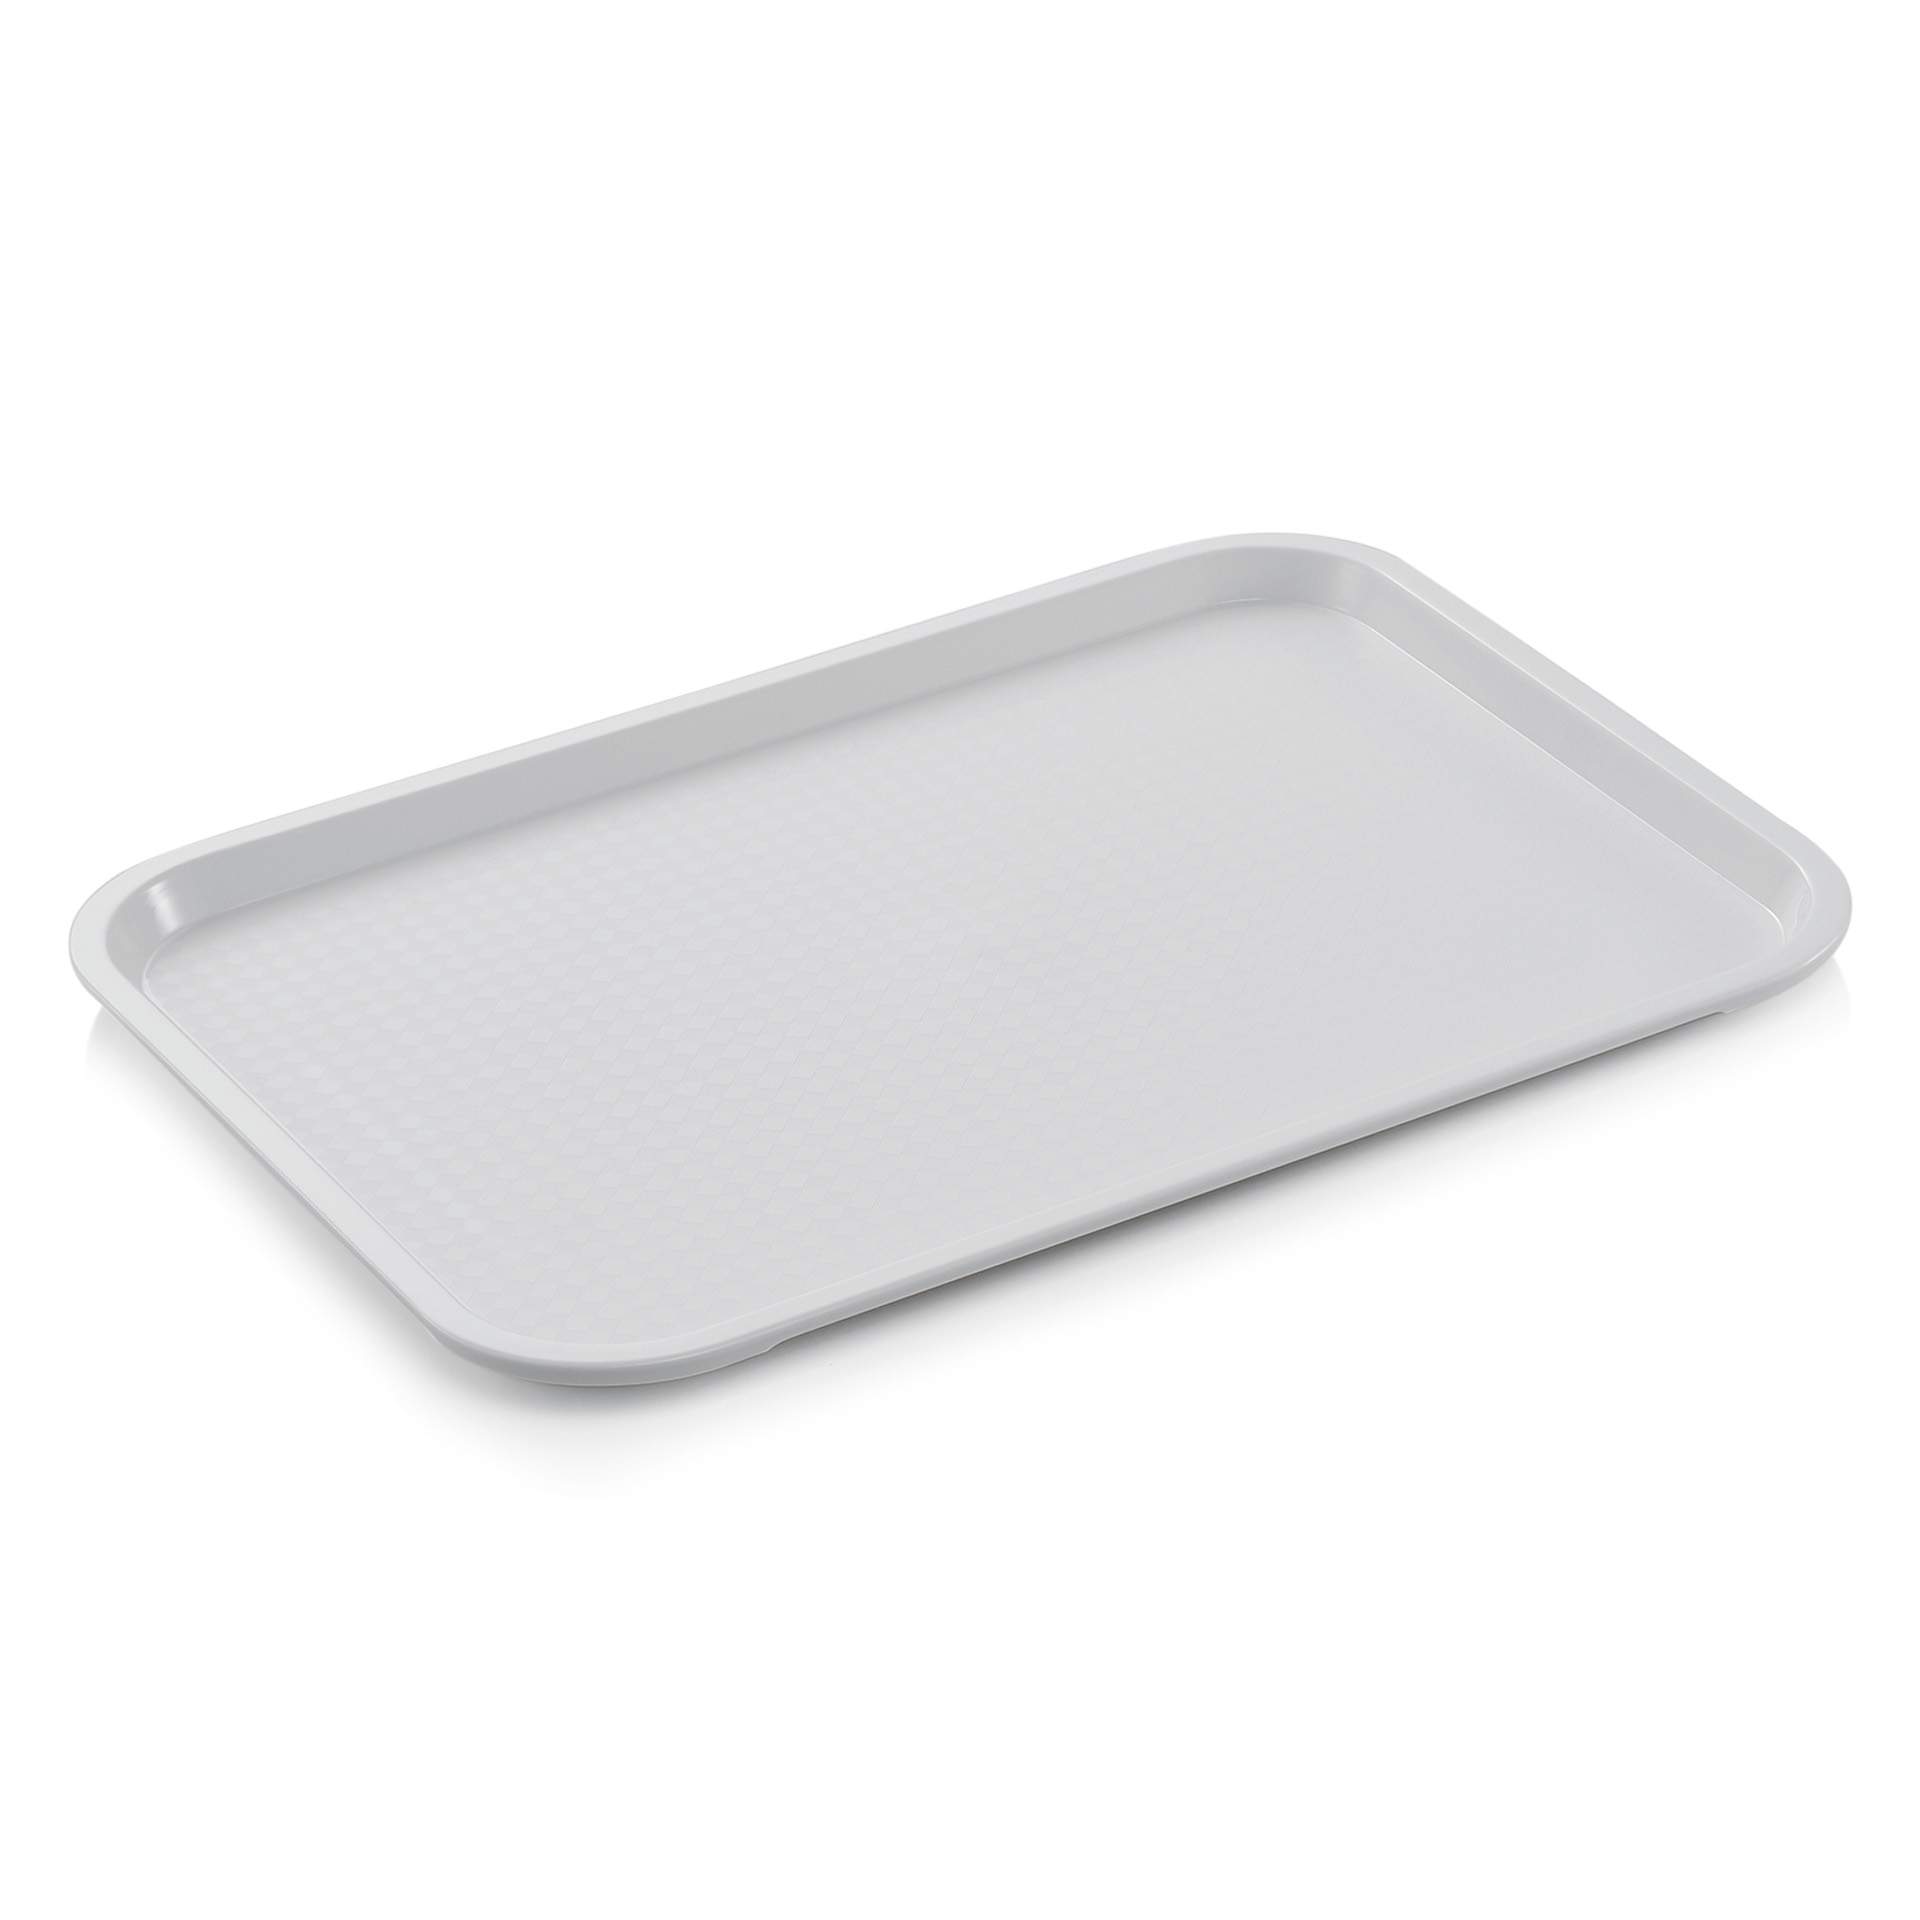 Tablett - Stapelnocken - Serie 9220 - elfenbein - Abm. 45,5 x 35,5 cm - Polypropylen - premium Qualität - 9226455-A